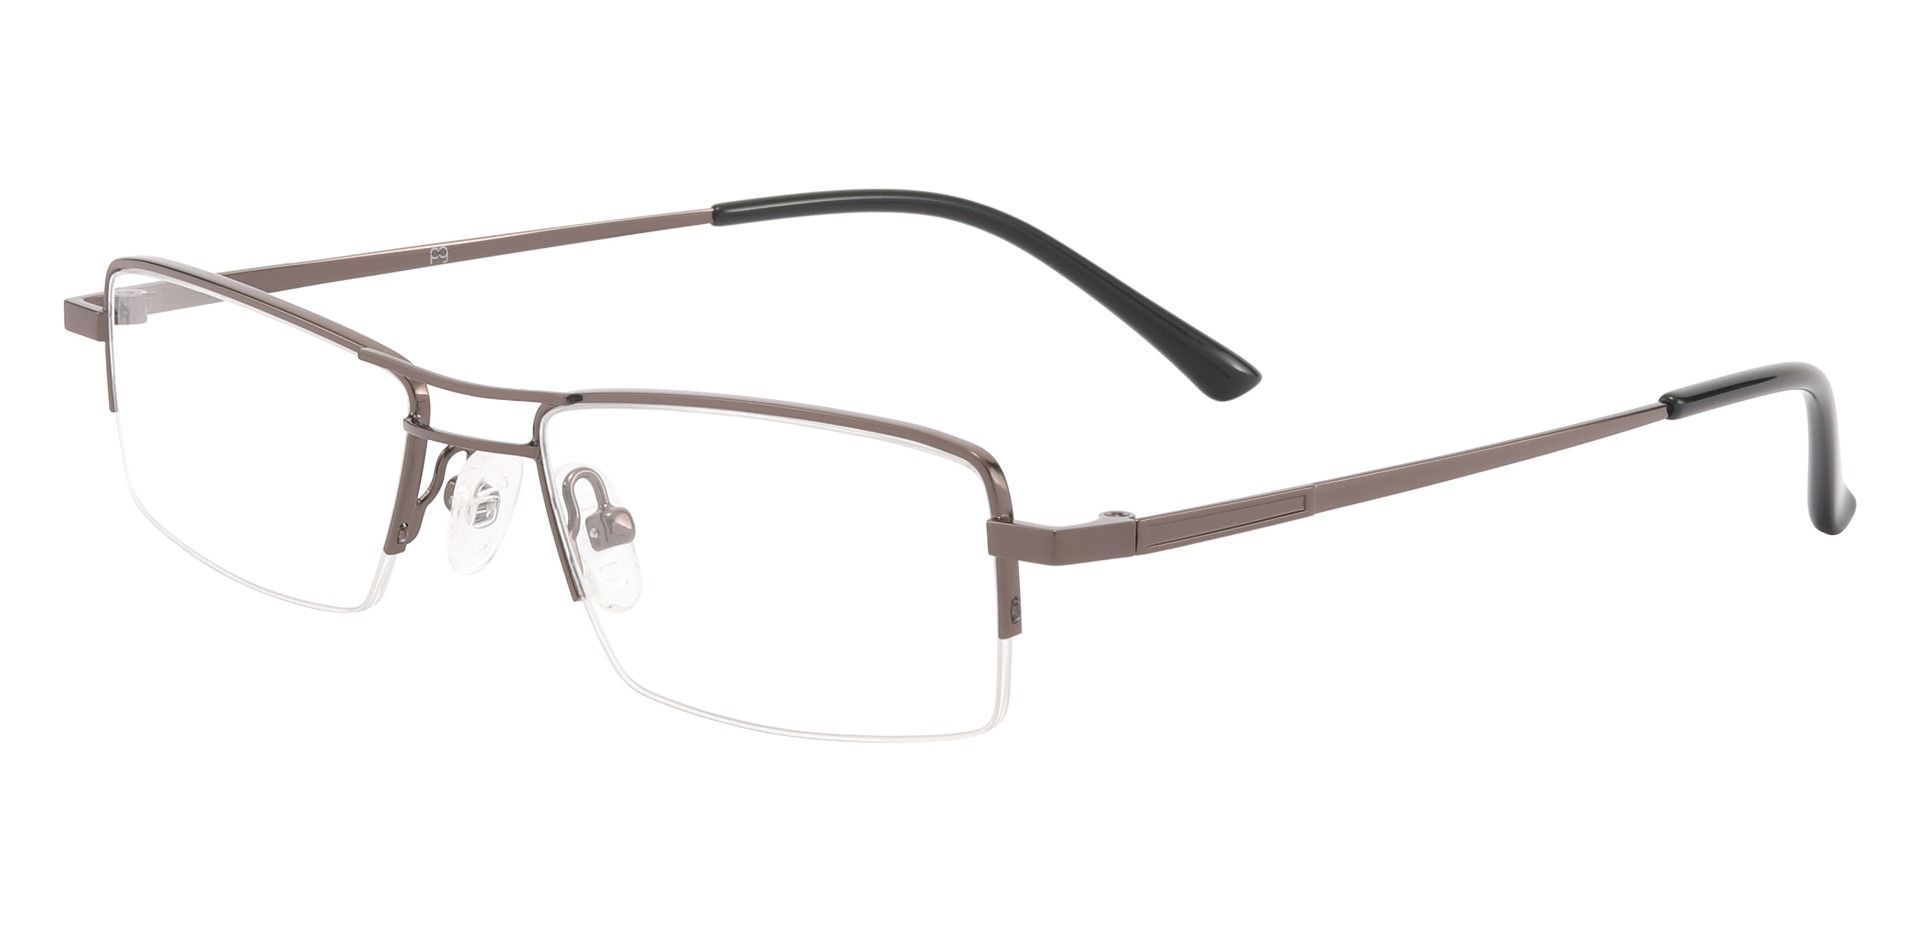 Gilbert Aviator Single Vision Glasses - Brown | Men's Eyeglasses ...